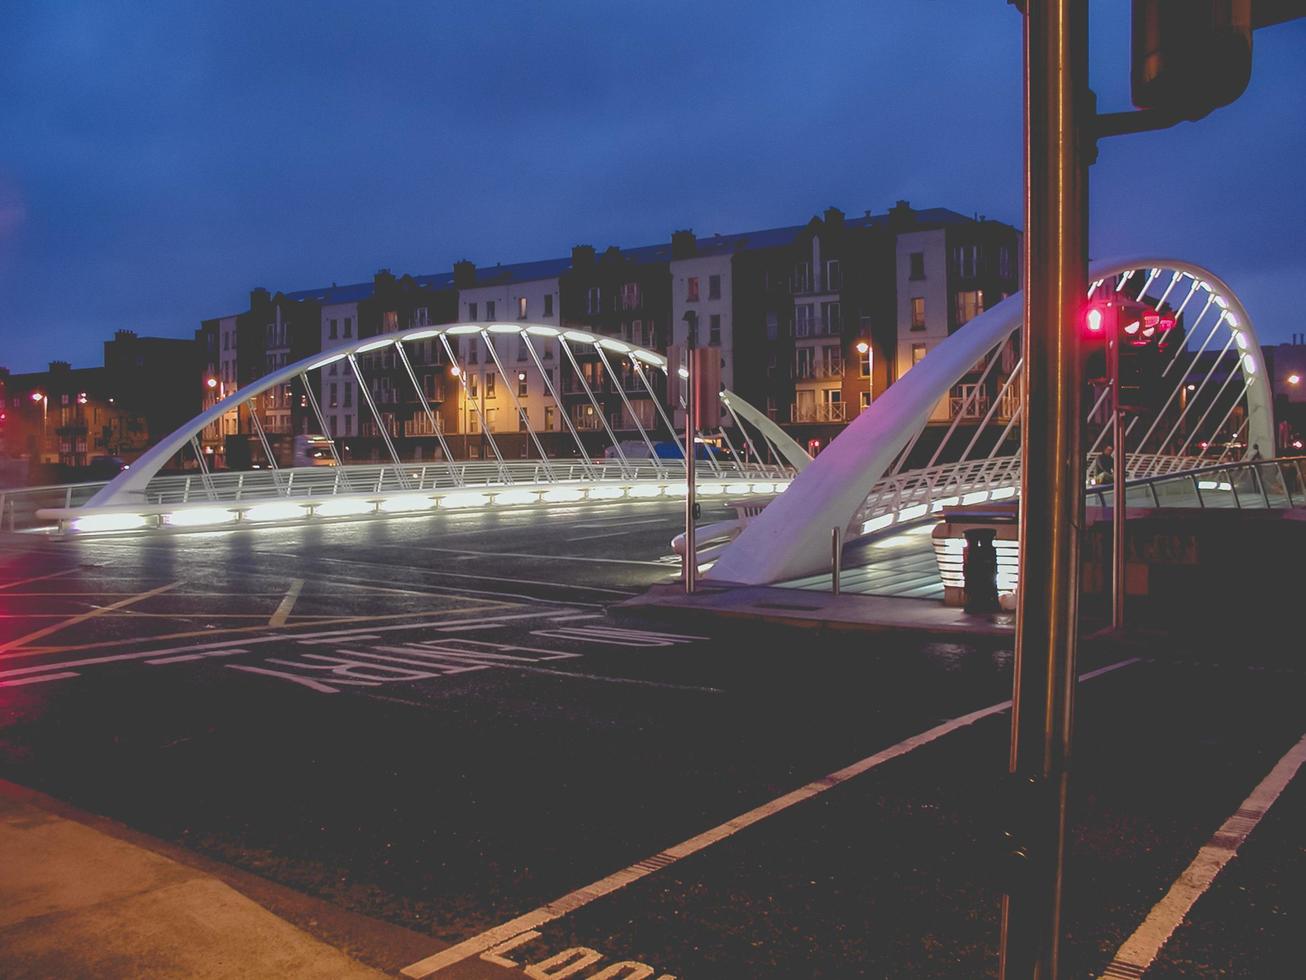 Dublin at night photo